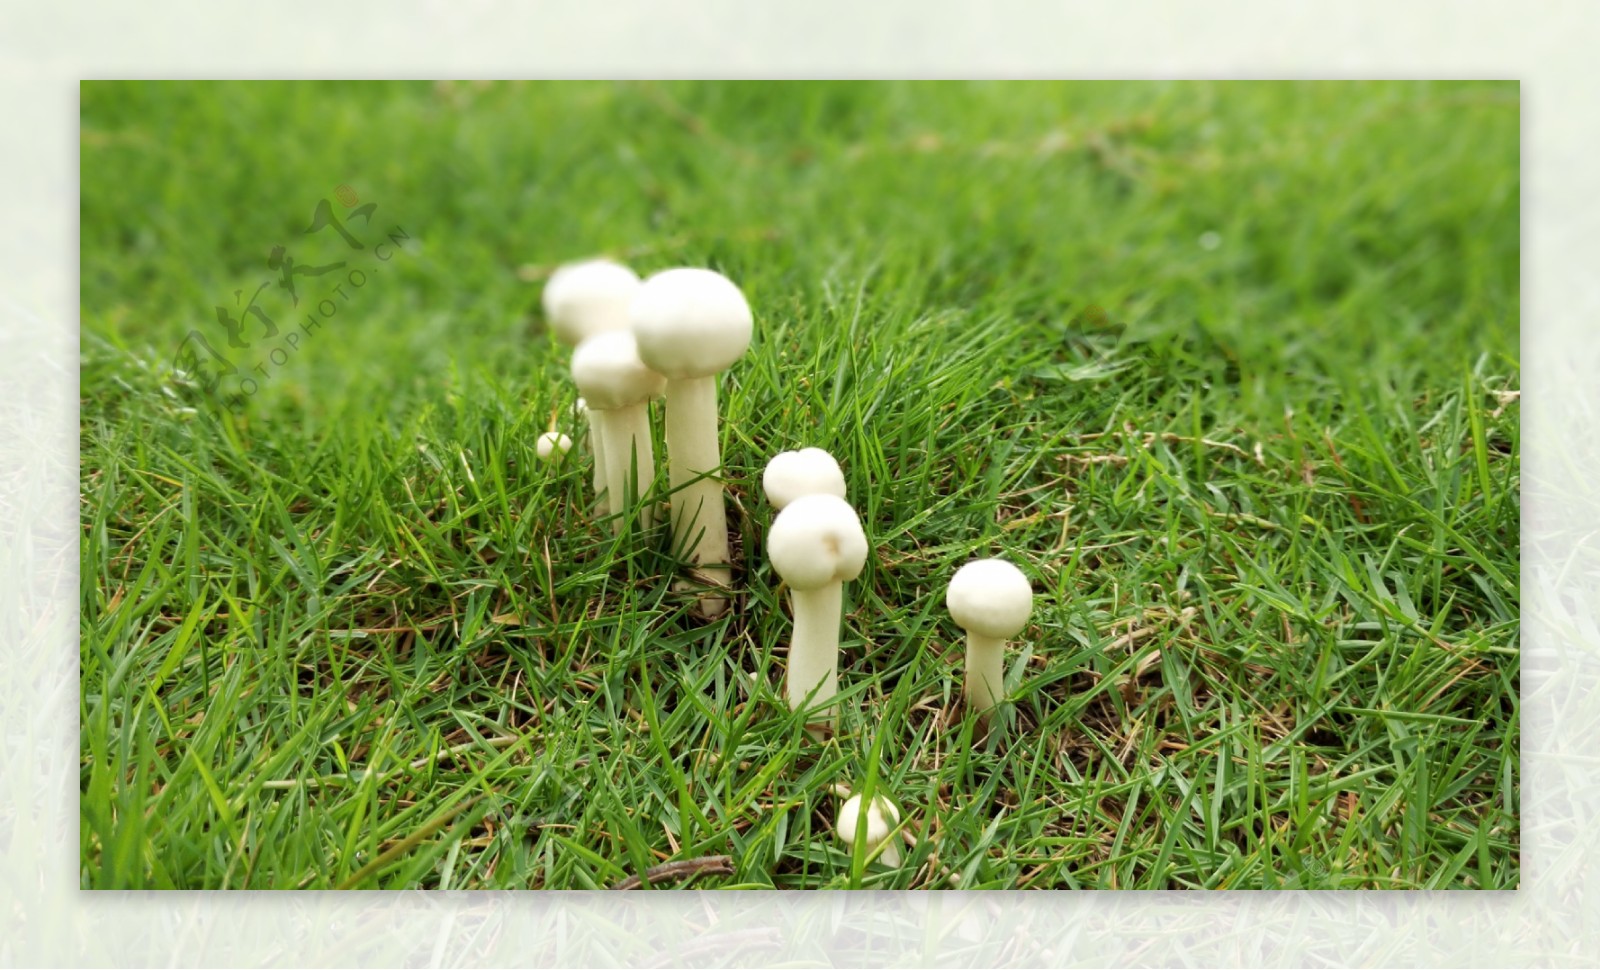 蘑菇 白色的 白蘑菇 - Pixabay上的免费照片 - Pixabay